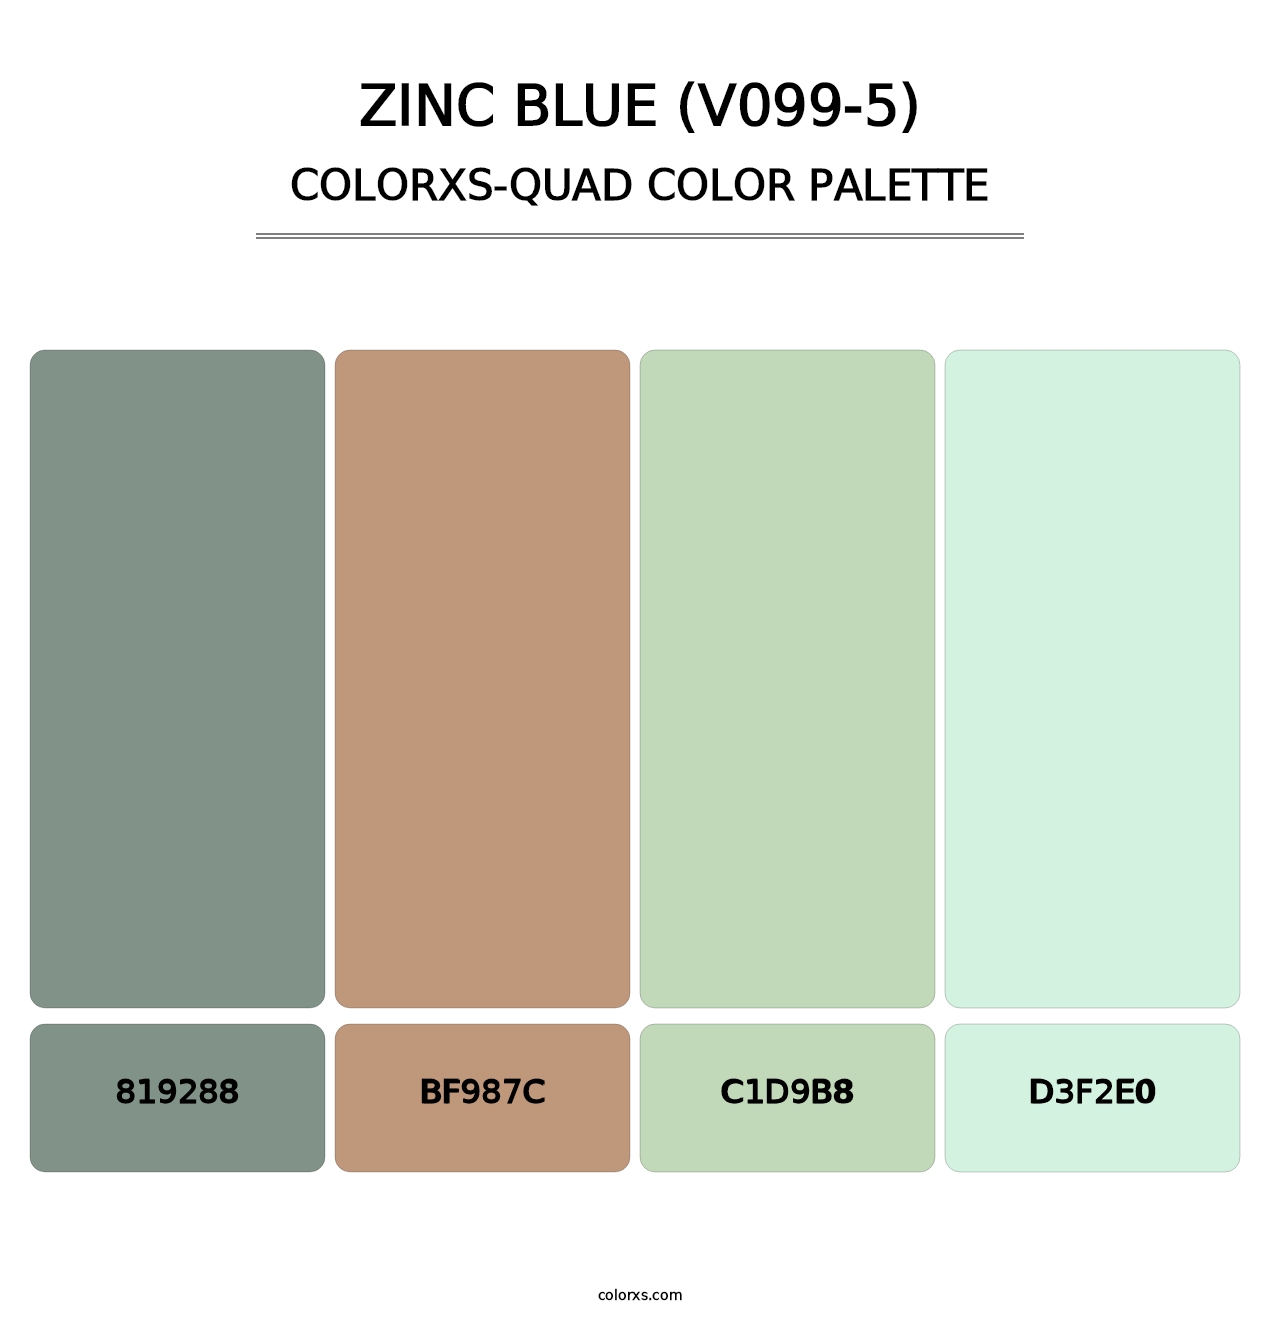 Zinc Blue (V099-5) - Colorxs Quad Palette